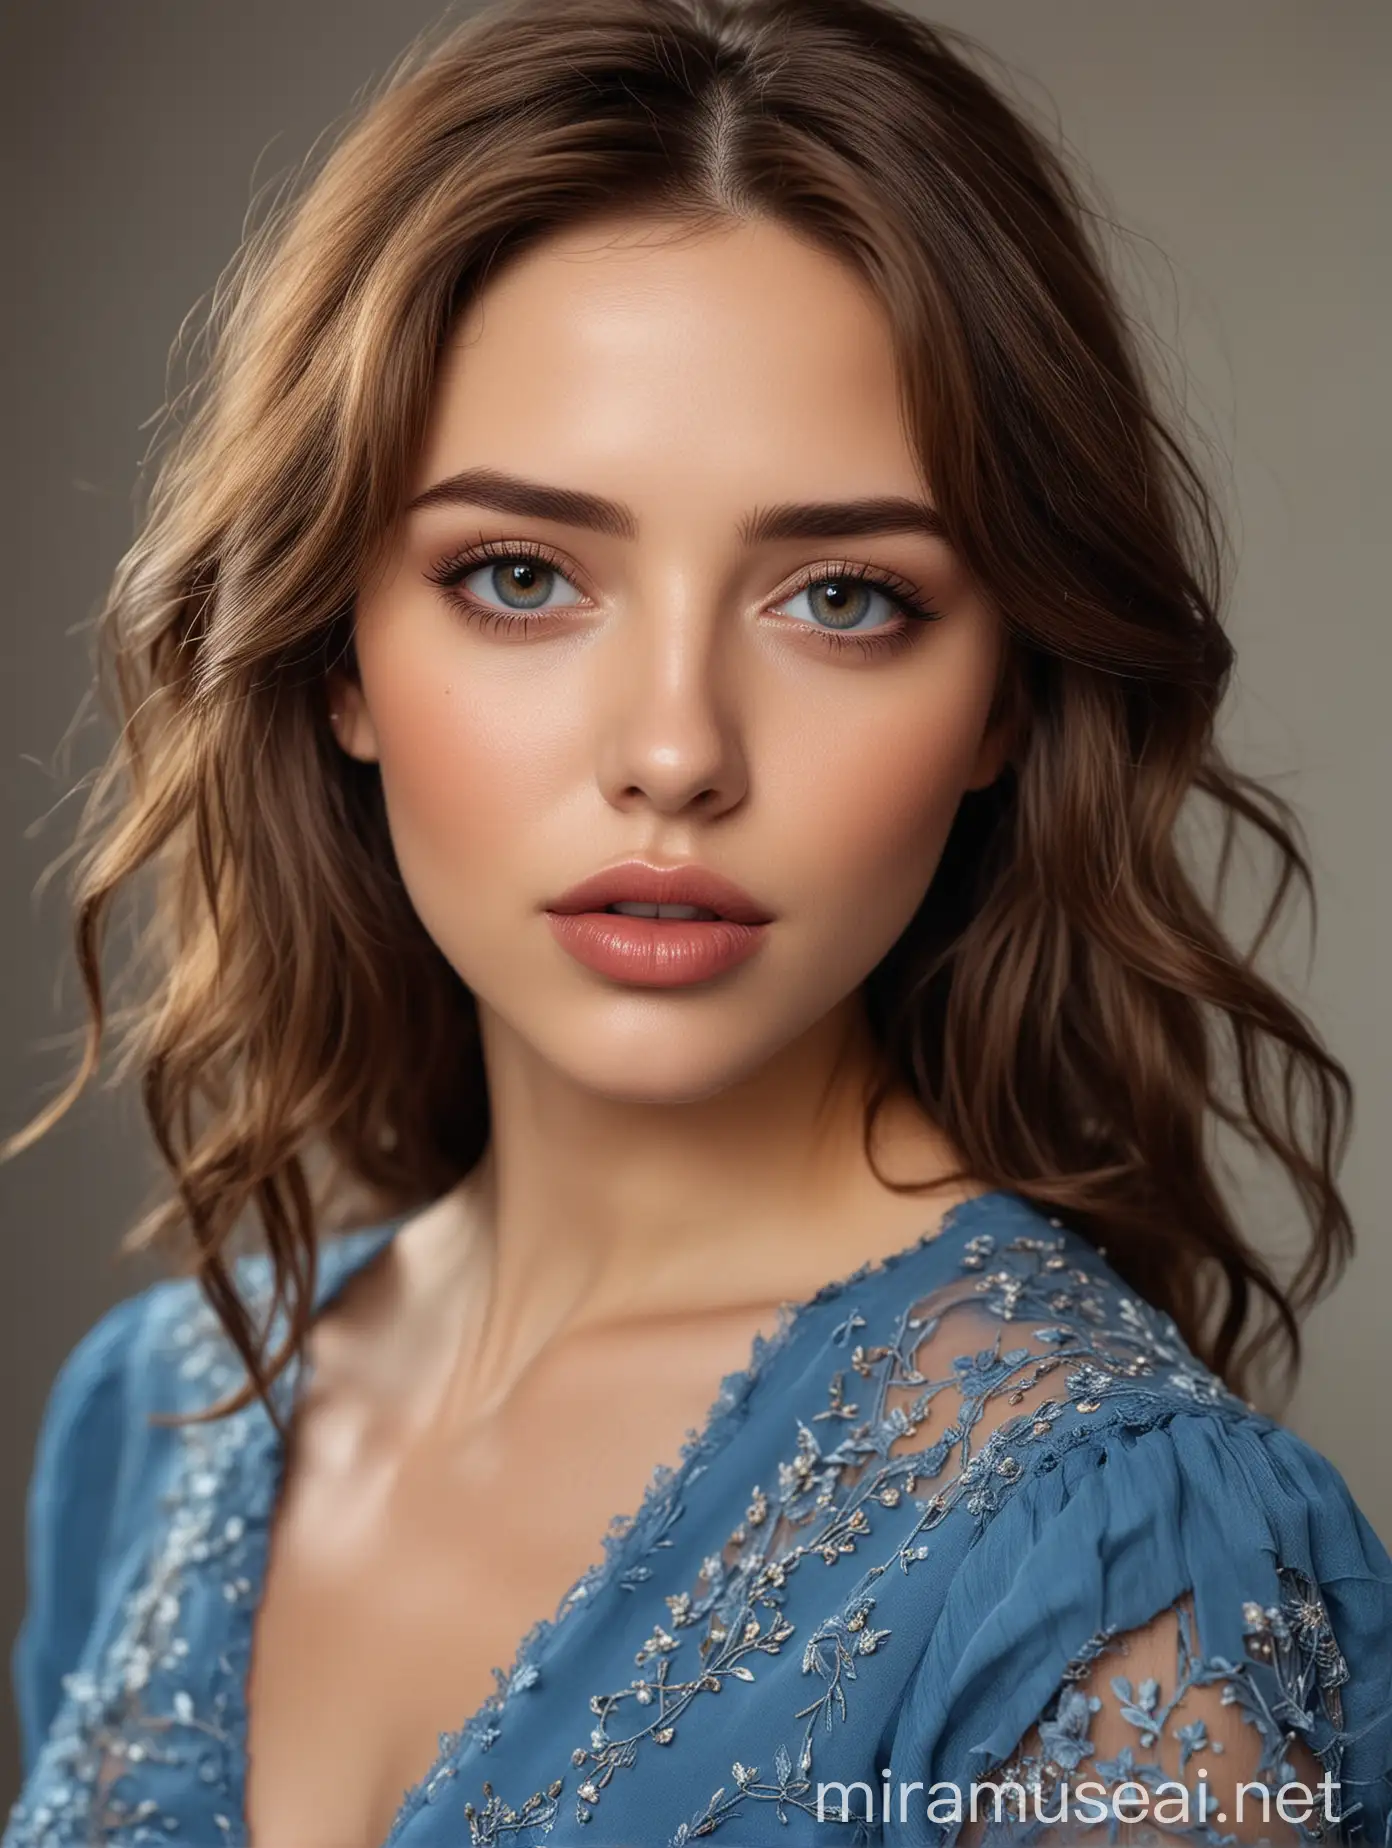 Mujer de cabello marrón, muy hermosa, de facciones delicadas, labios gruesos ojos claros, vestido azul